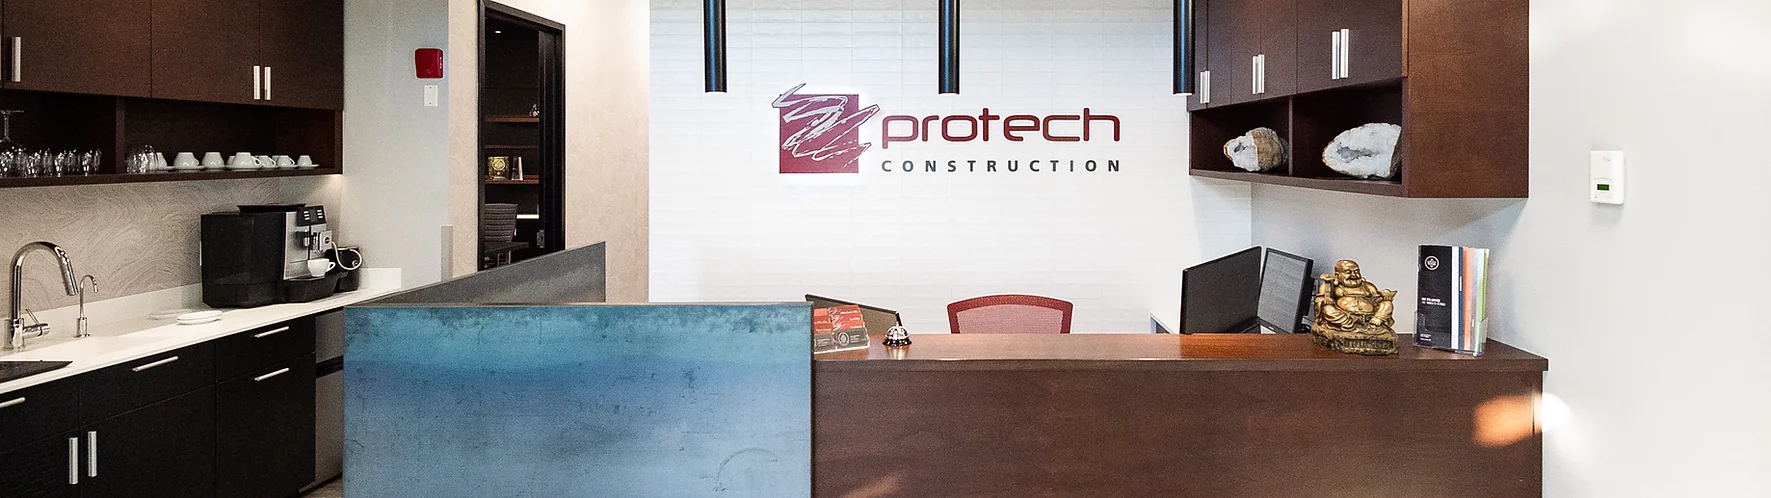 Vue intérieure du siège social de Protech Construction après la transformation réalisée par notre entrepreneur général.